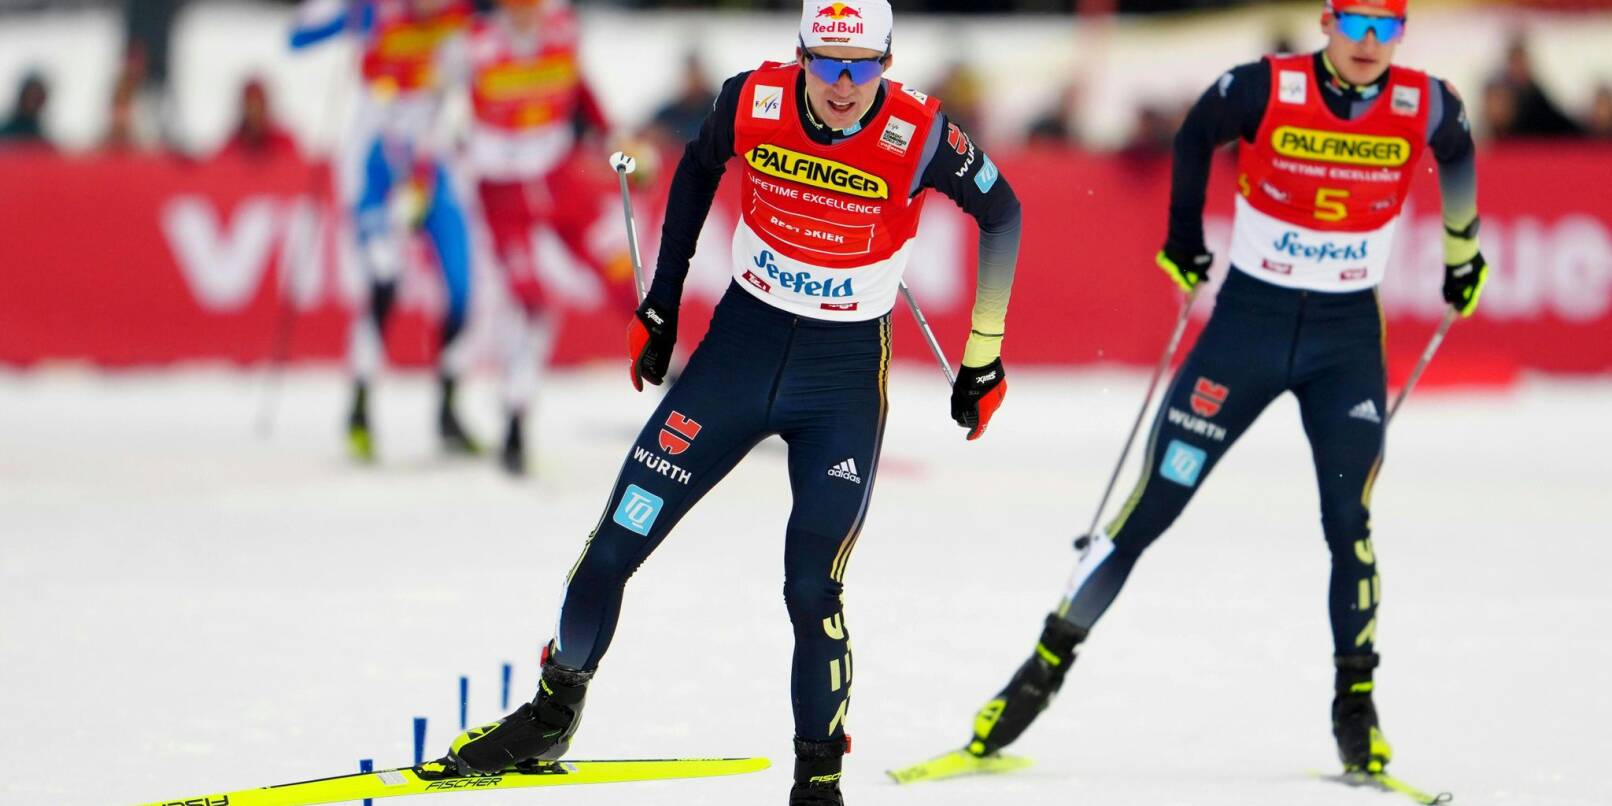 Vinzenz Geiger (l) und Julian Schmid siegten gemeinsam im Teamsprint beim Weltcup in Lahti.